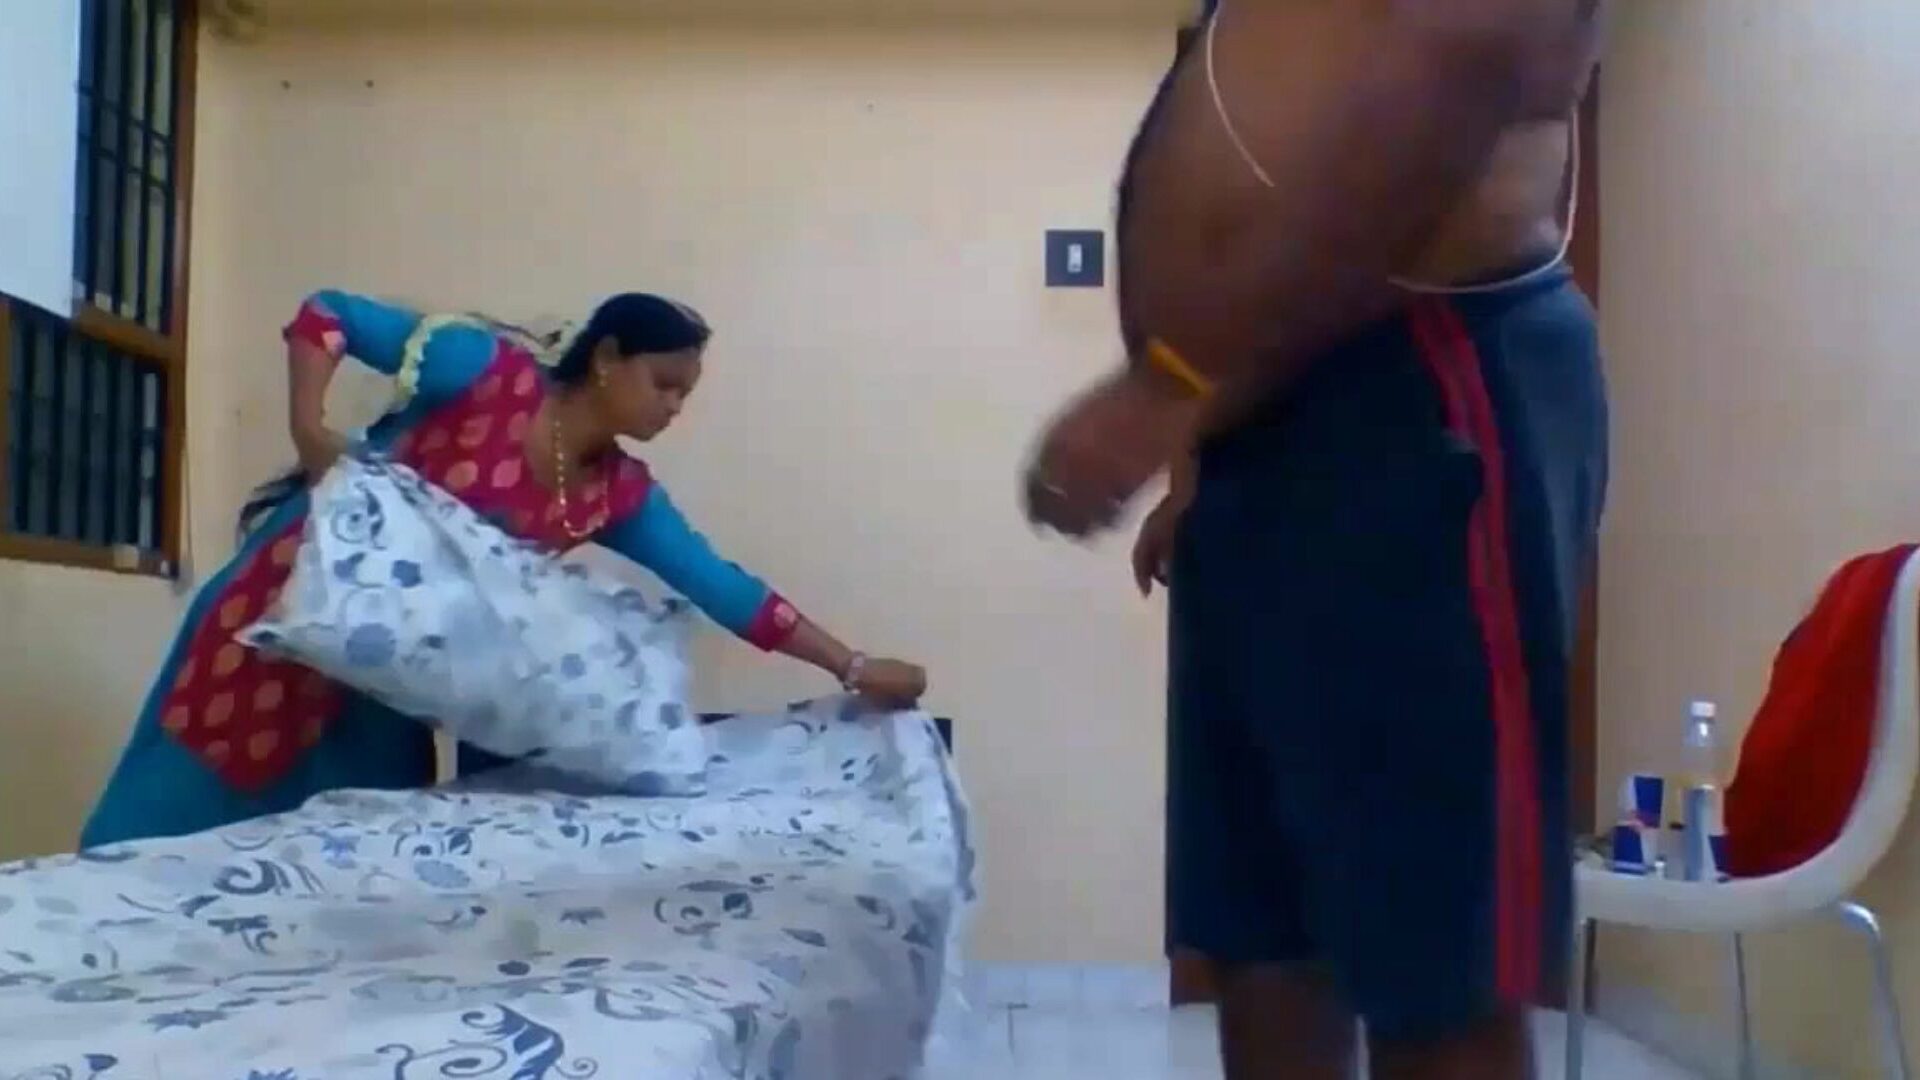 tamil fantasy: δωρεάν ινδική βίντεο πορνό hd 80 - xhamster παρακολουθήστε tamil fantasy tube fuckfest βίντεο δωρεάν για όλους στο xhamster, με την κυρίαρχη σειρά ινδικών ταινιών tamil & κινητές ταινίες tamil hd porno